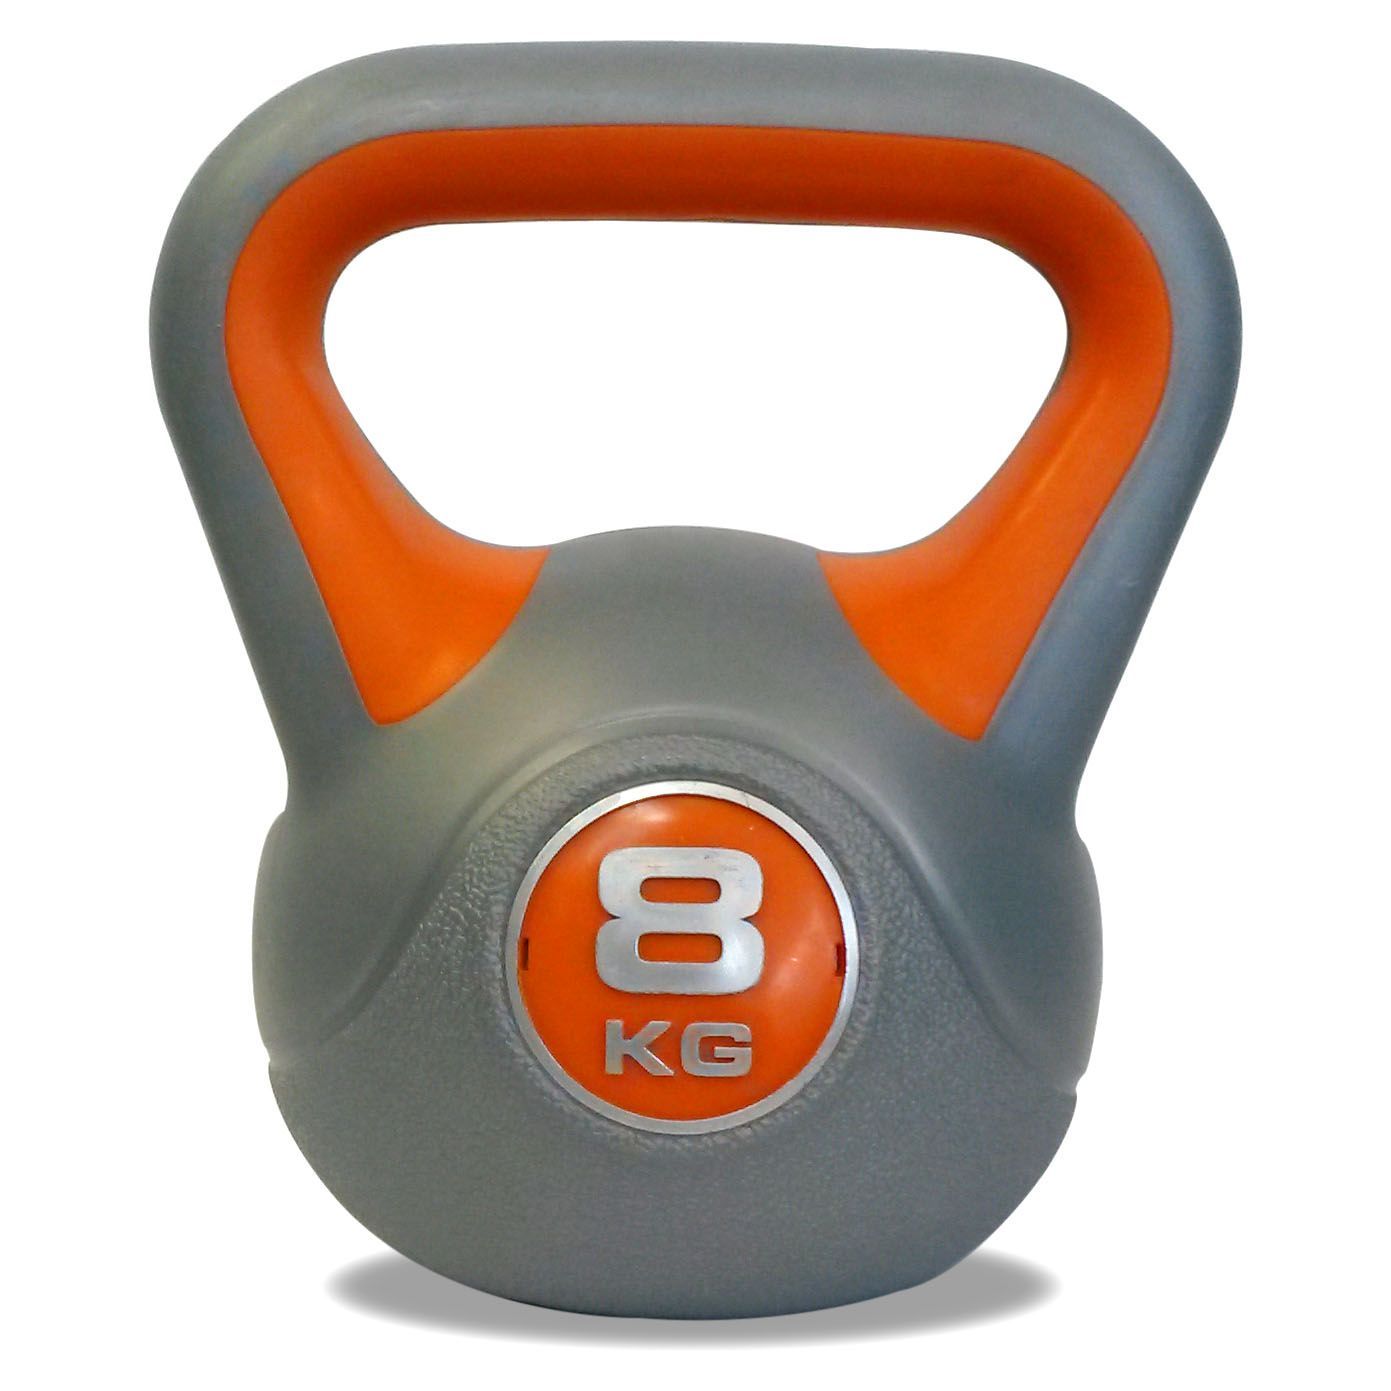 DKN 2, 4, 6, 8 and 10kg Vinyl Kettlebell Weight Set – Sweatband